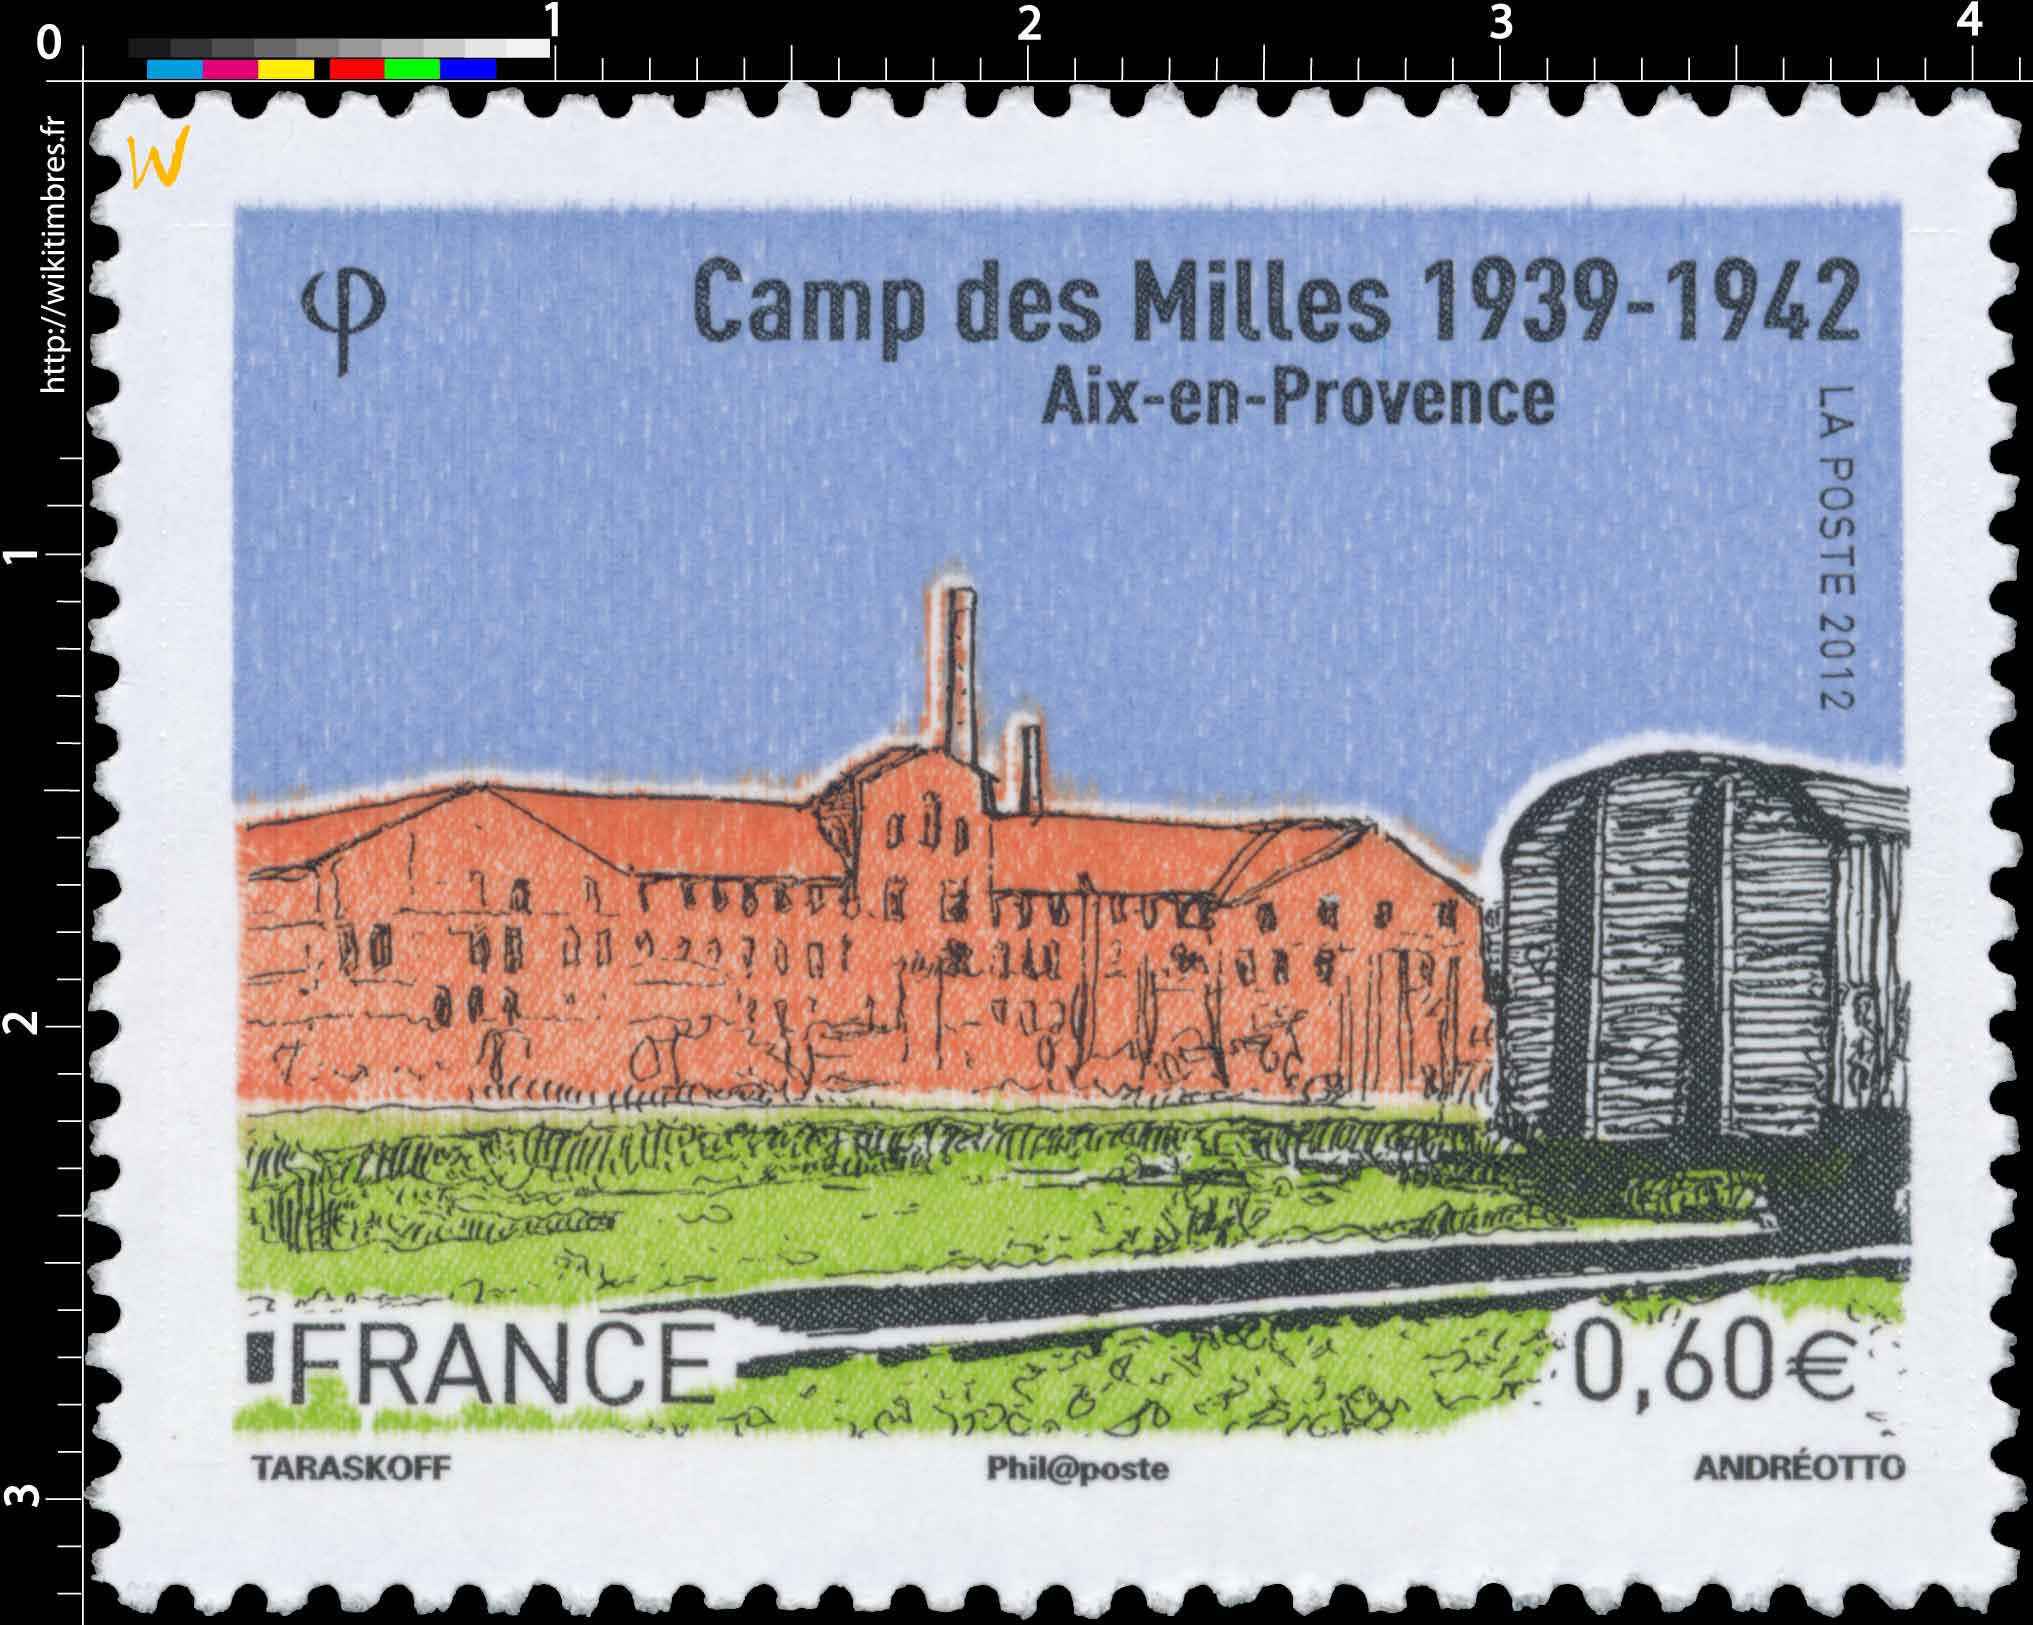 CAMP DES MILLES 1939–1942 Aix-en-Provence